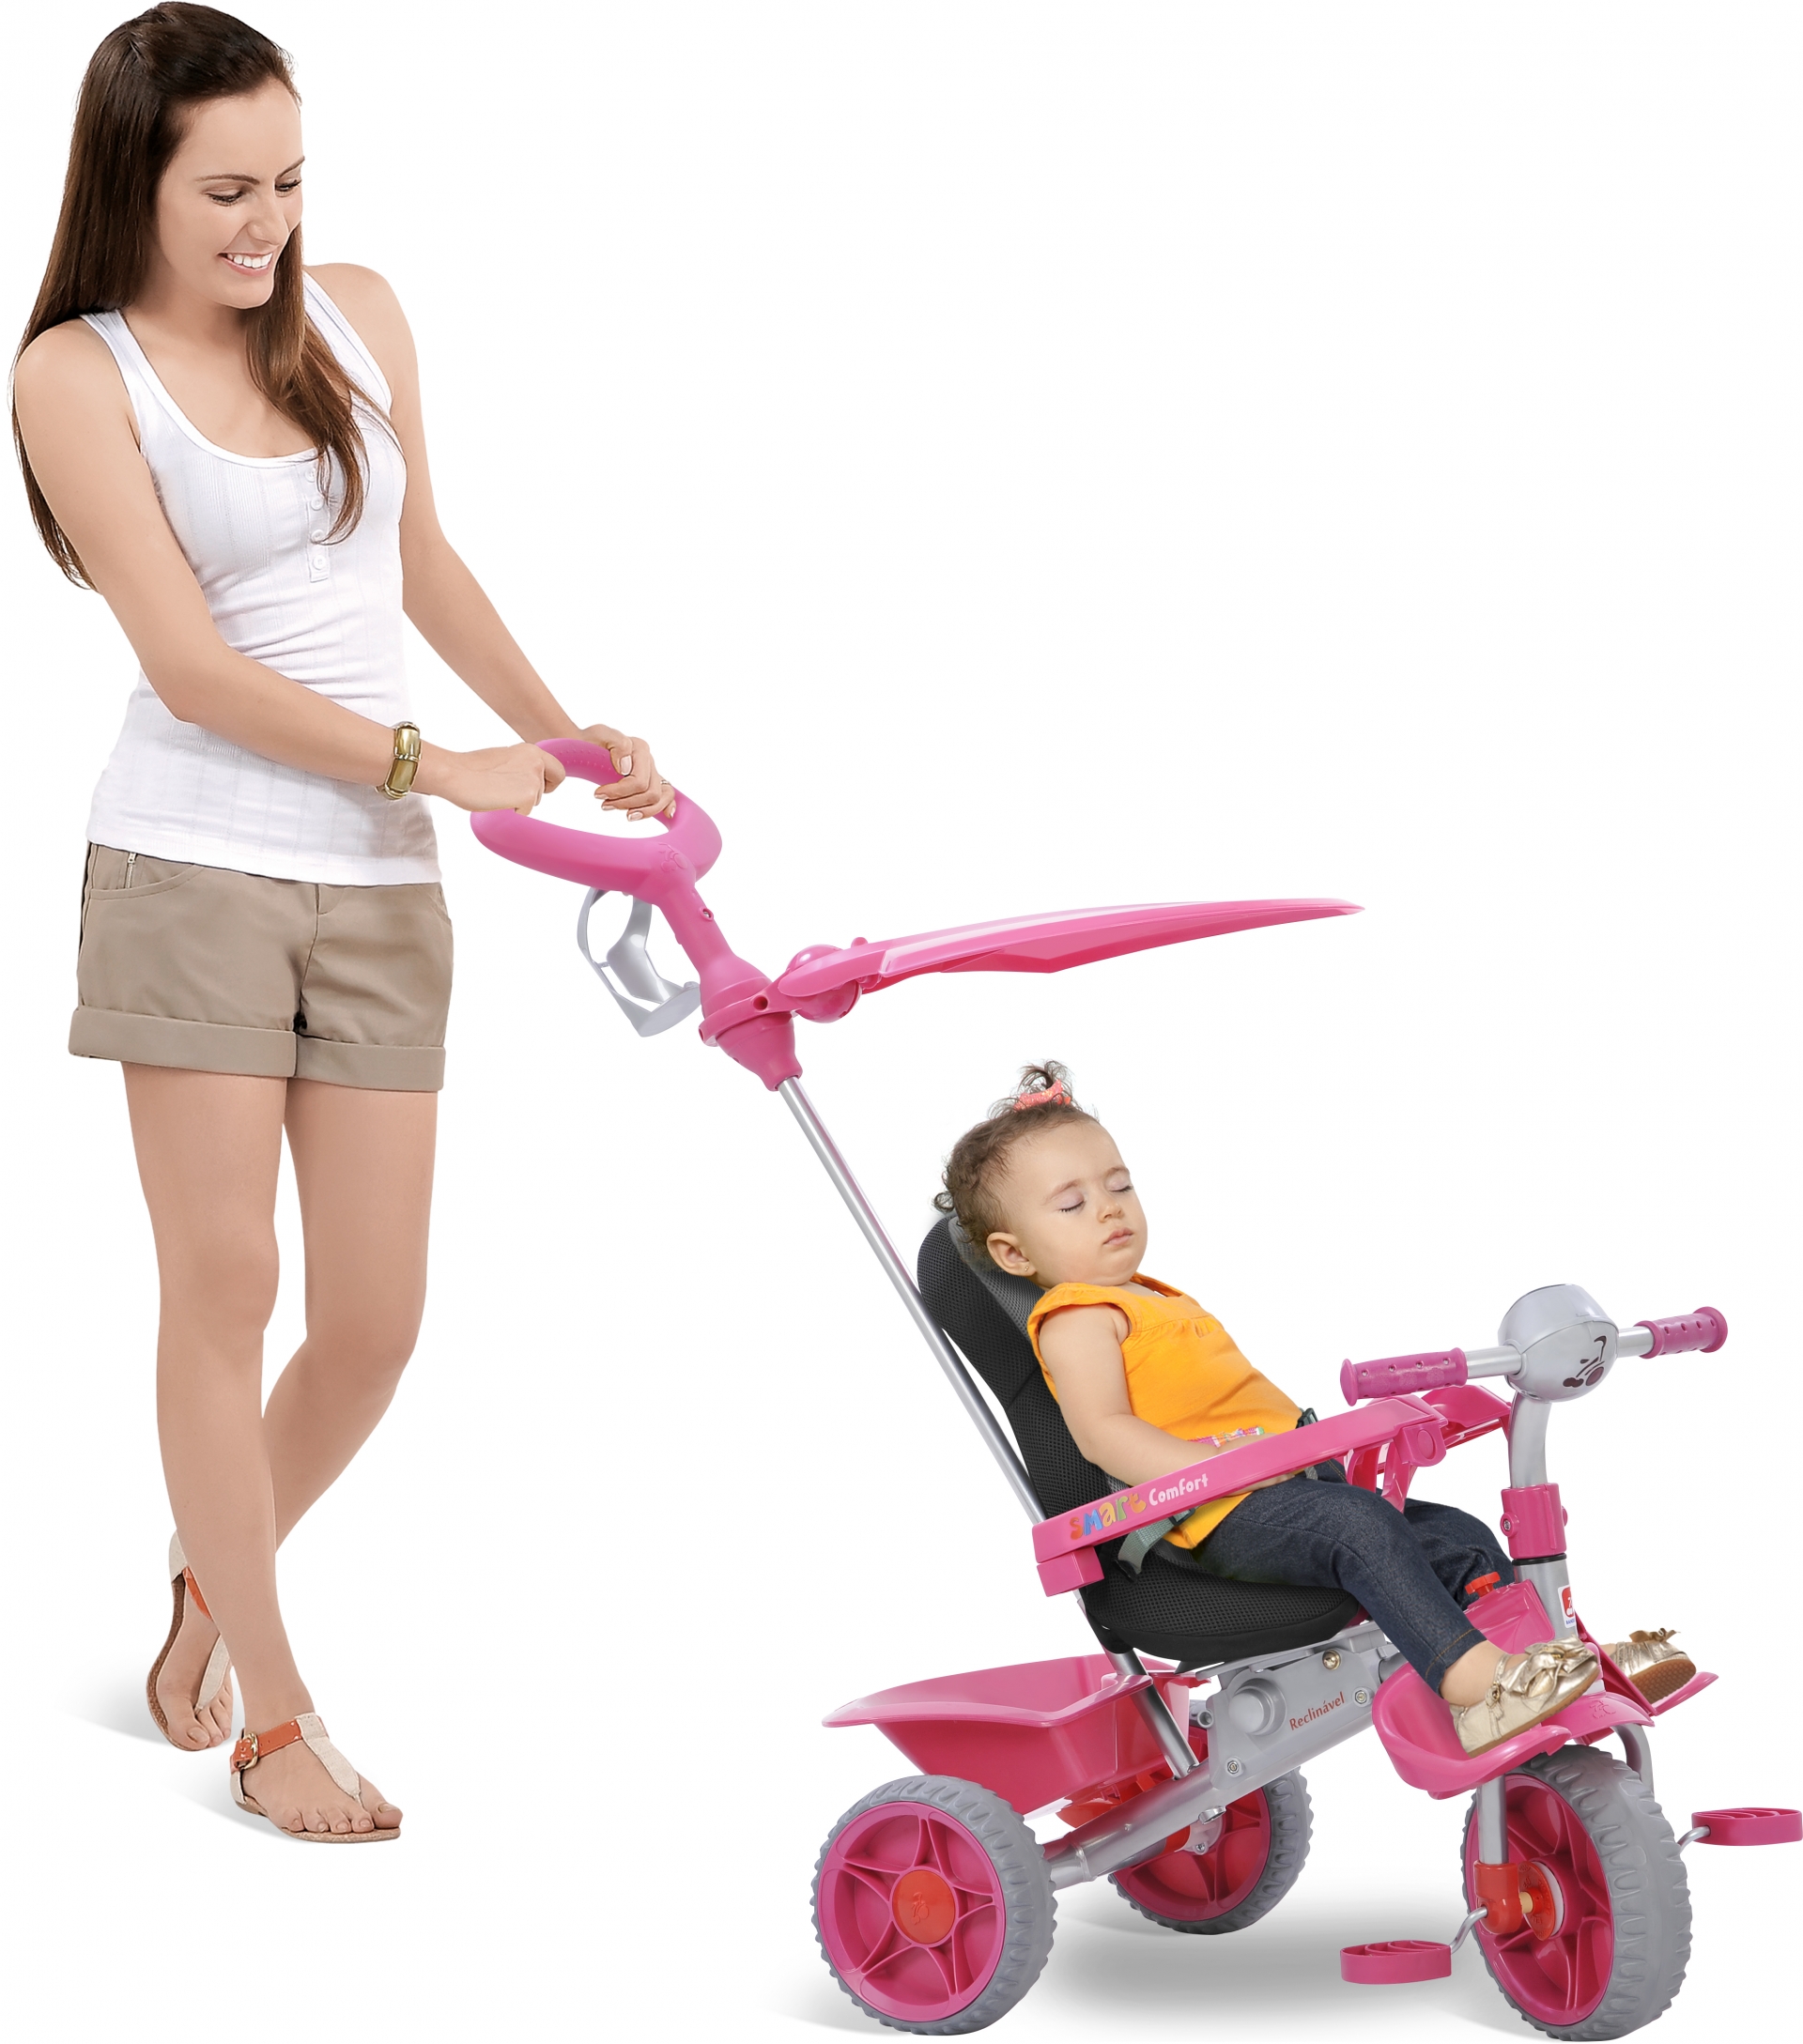 Triciclo Infantil Bandeirante Smart Comfort 3 em 1 Pedal e Passeio